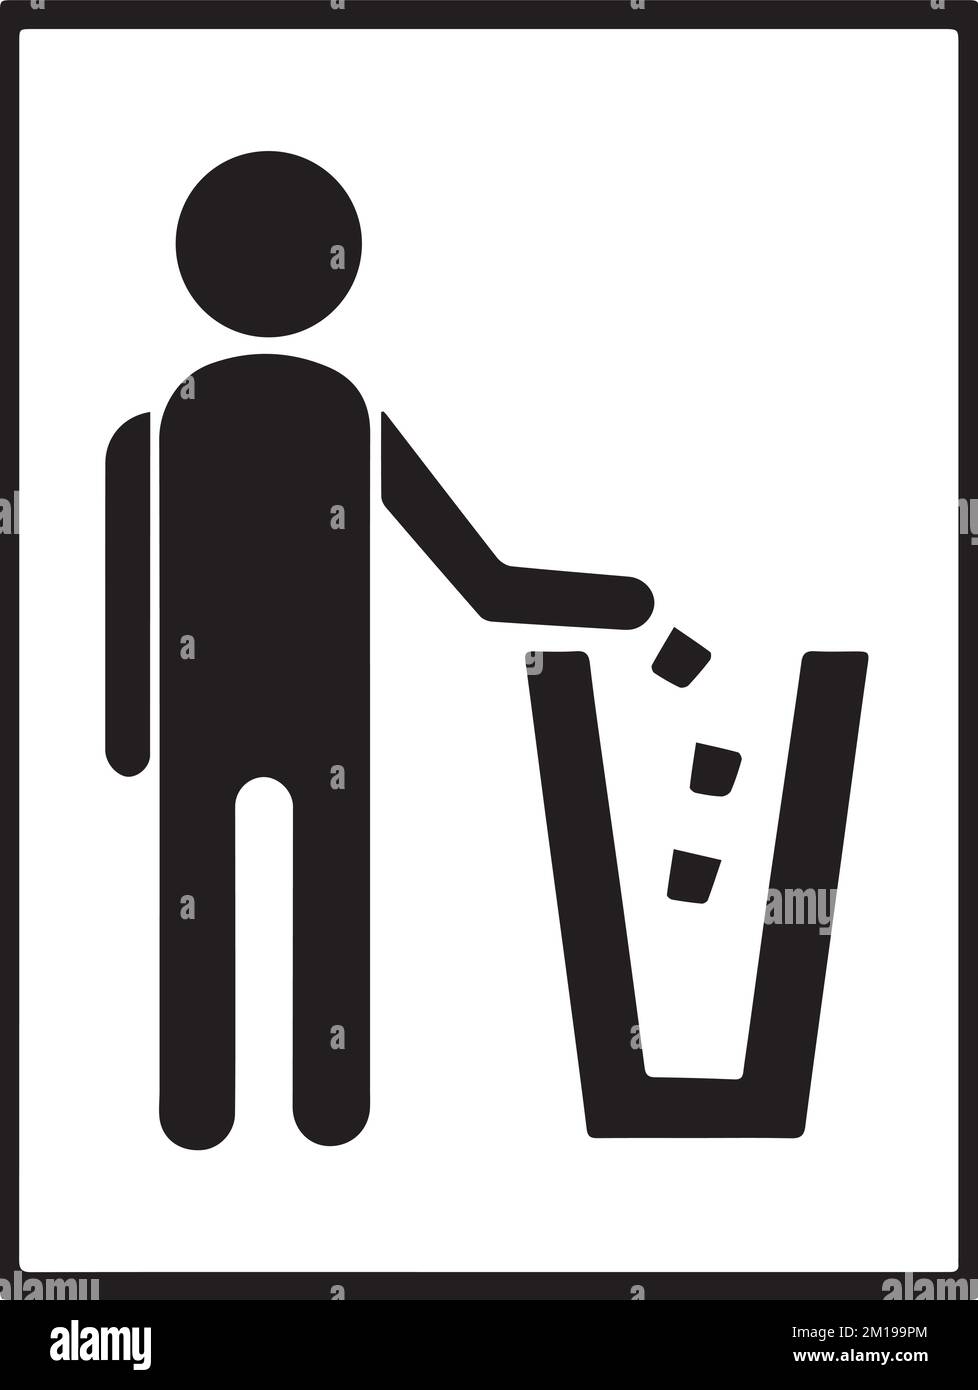 Symbole de la litière, bacs à déchets, paniers de papier usagé, symbole de recyclage, bac de recyclage, icône de recyclage des déchets Illustration de Vecteur